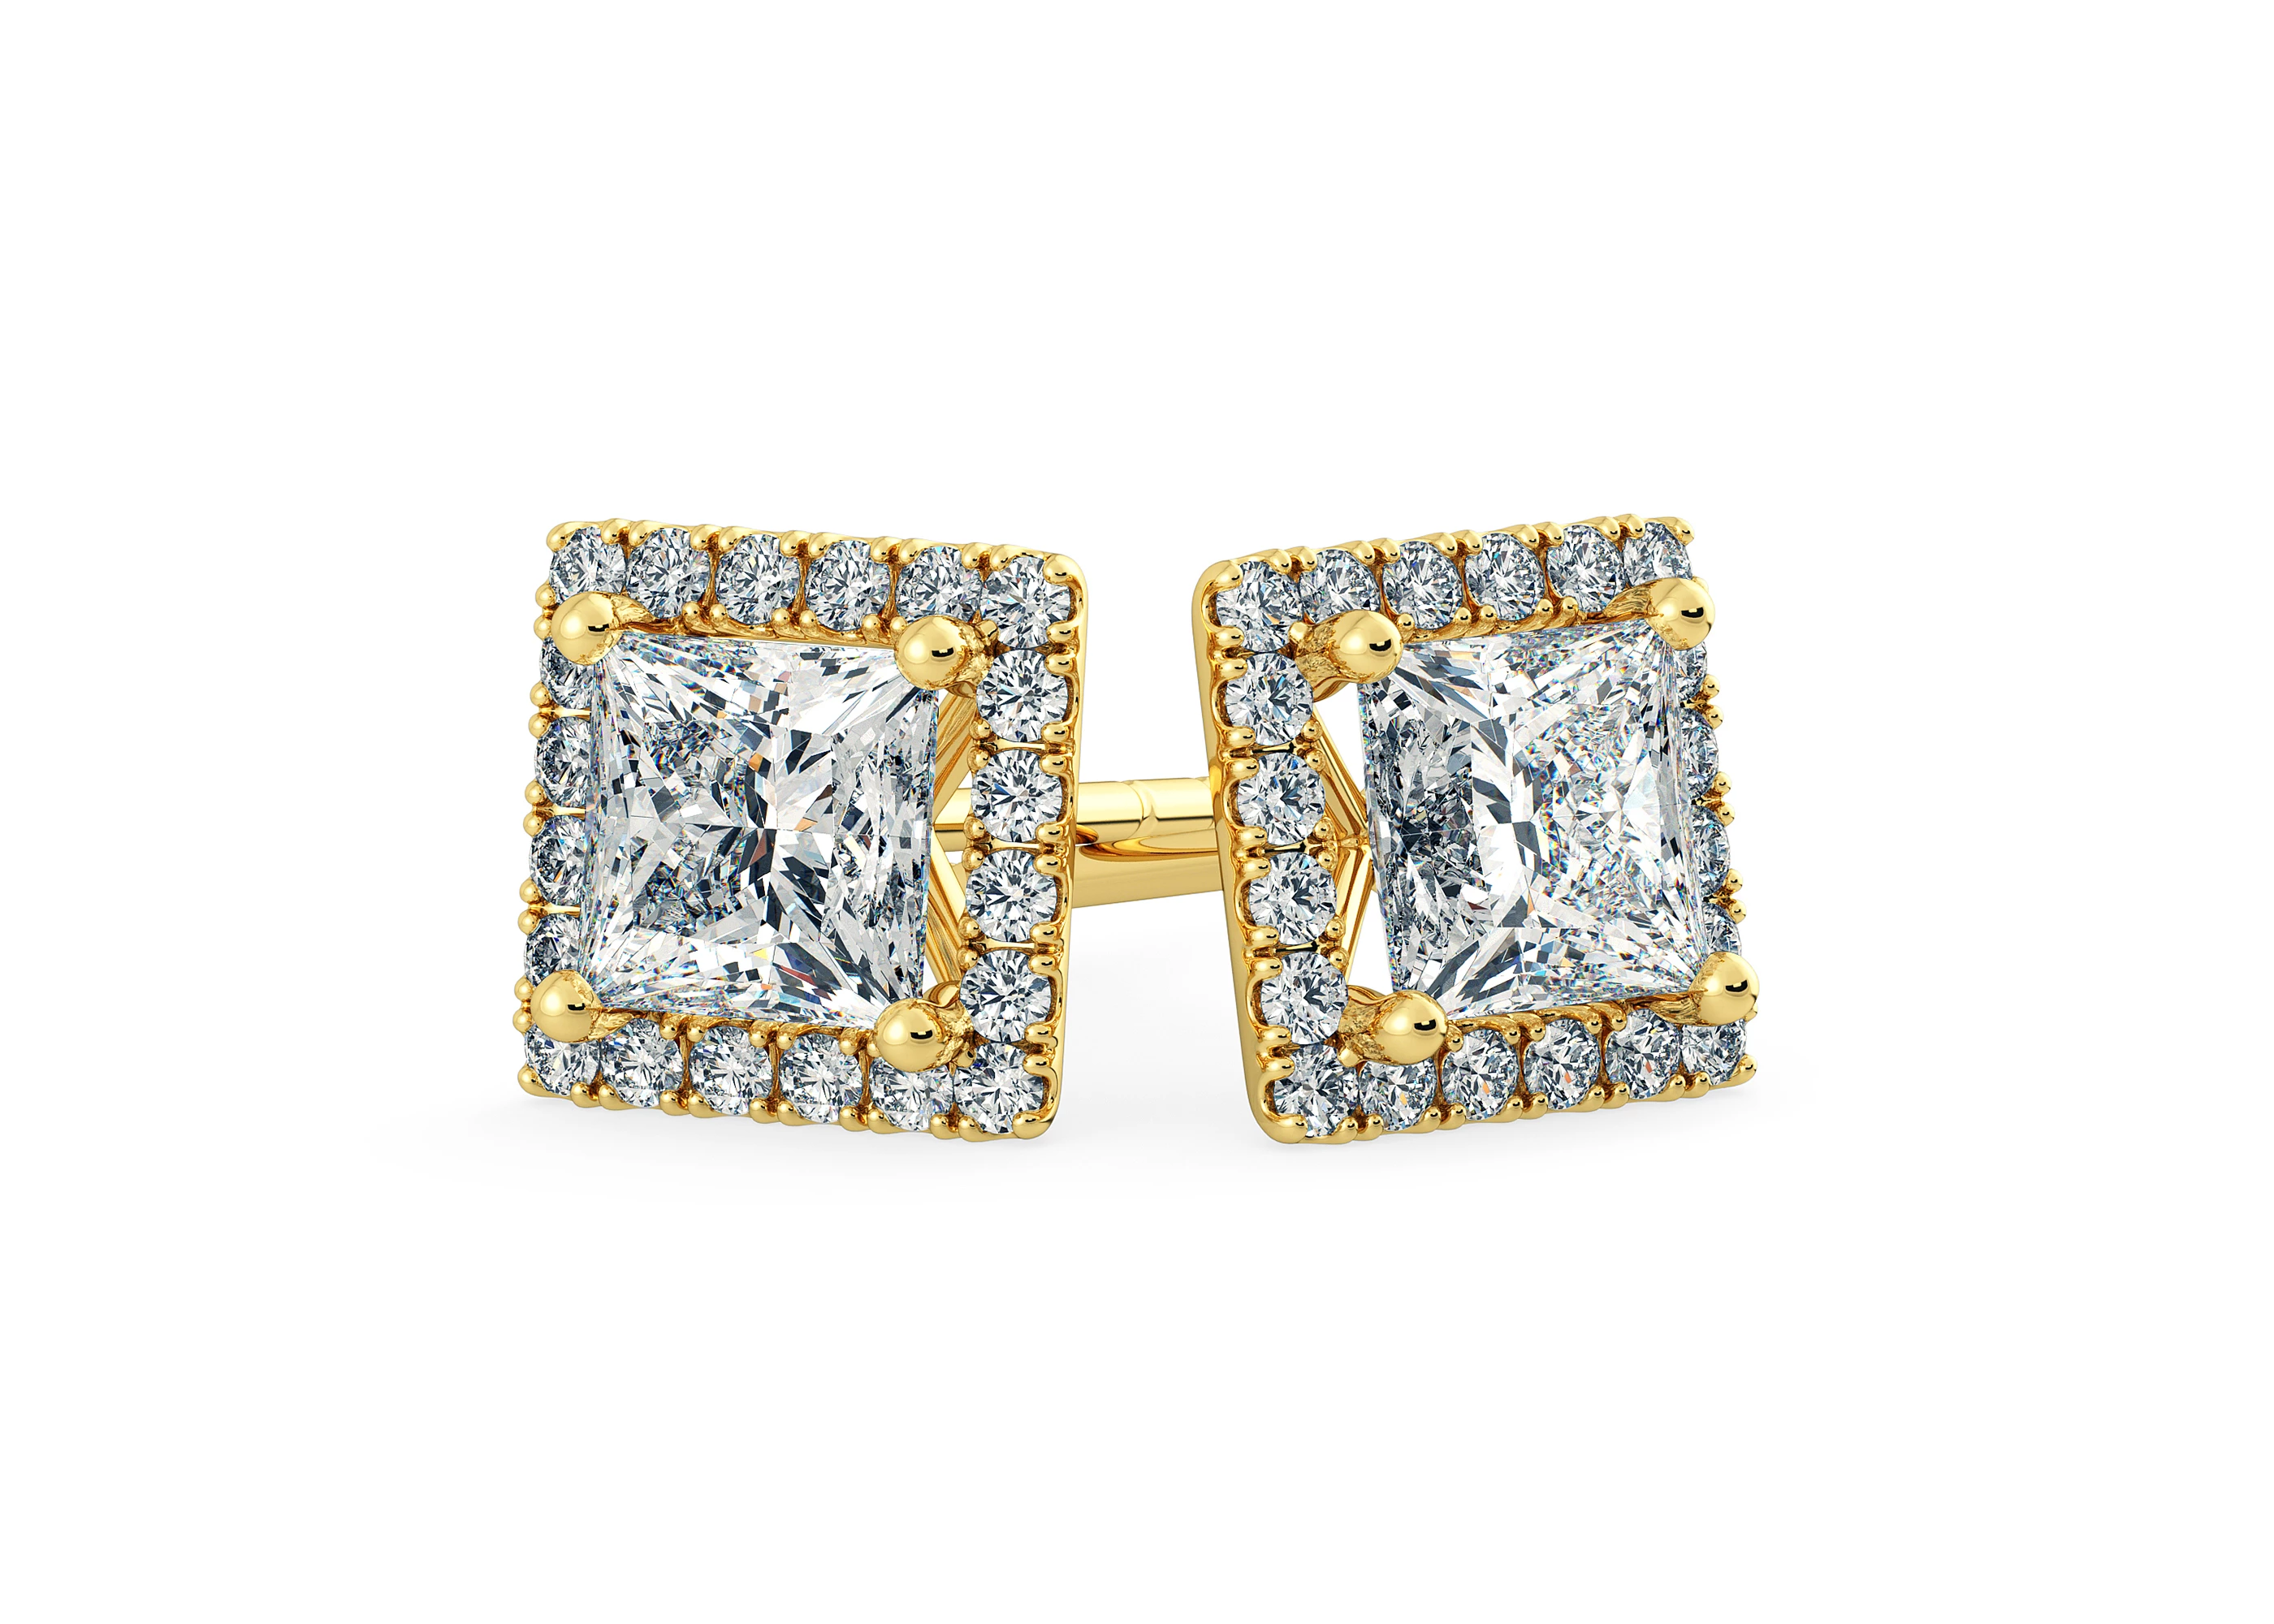 Bijou Princess Diamond Stud Earrings in 18K Yellow Gold with Butterfly Backs